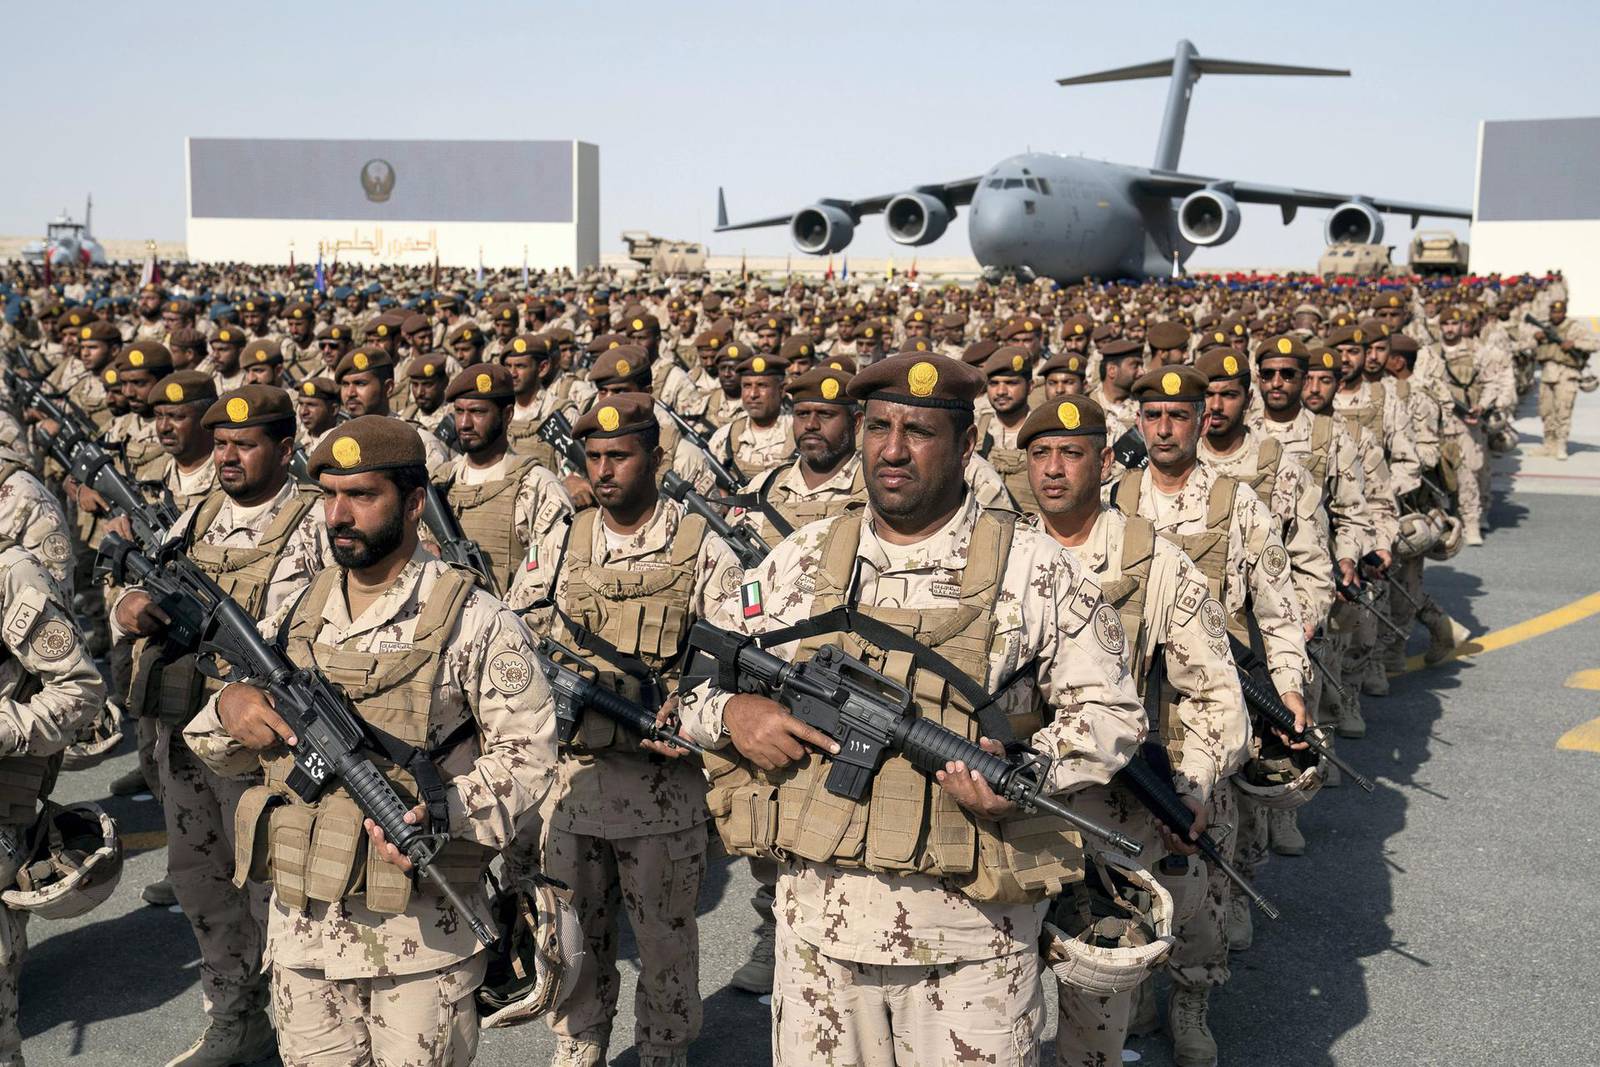 UAE Rulers celebrate Armed Forces' efforts in Yemen